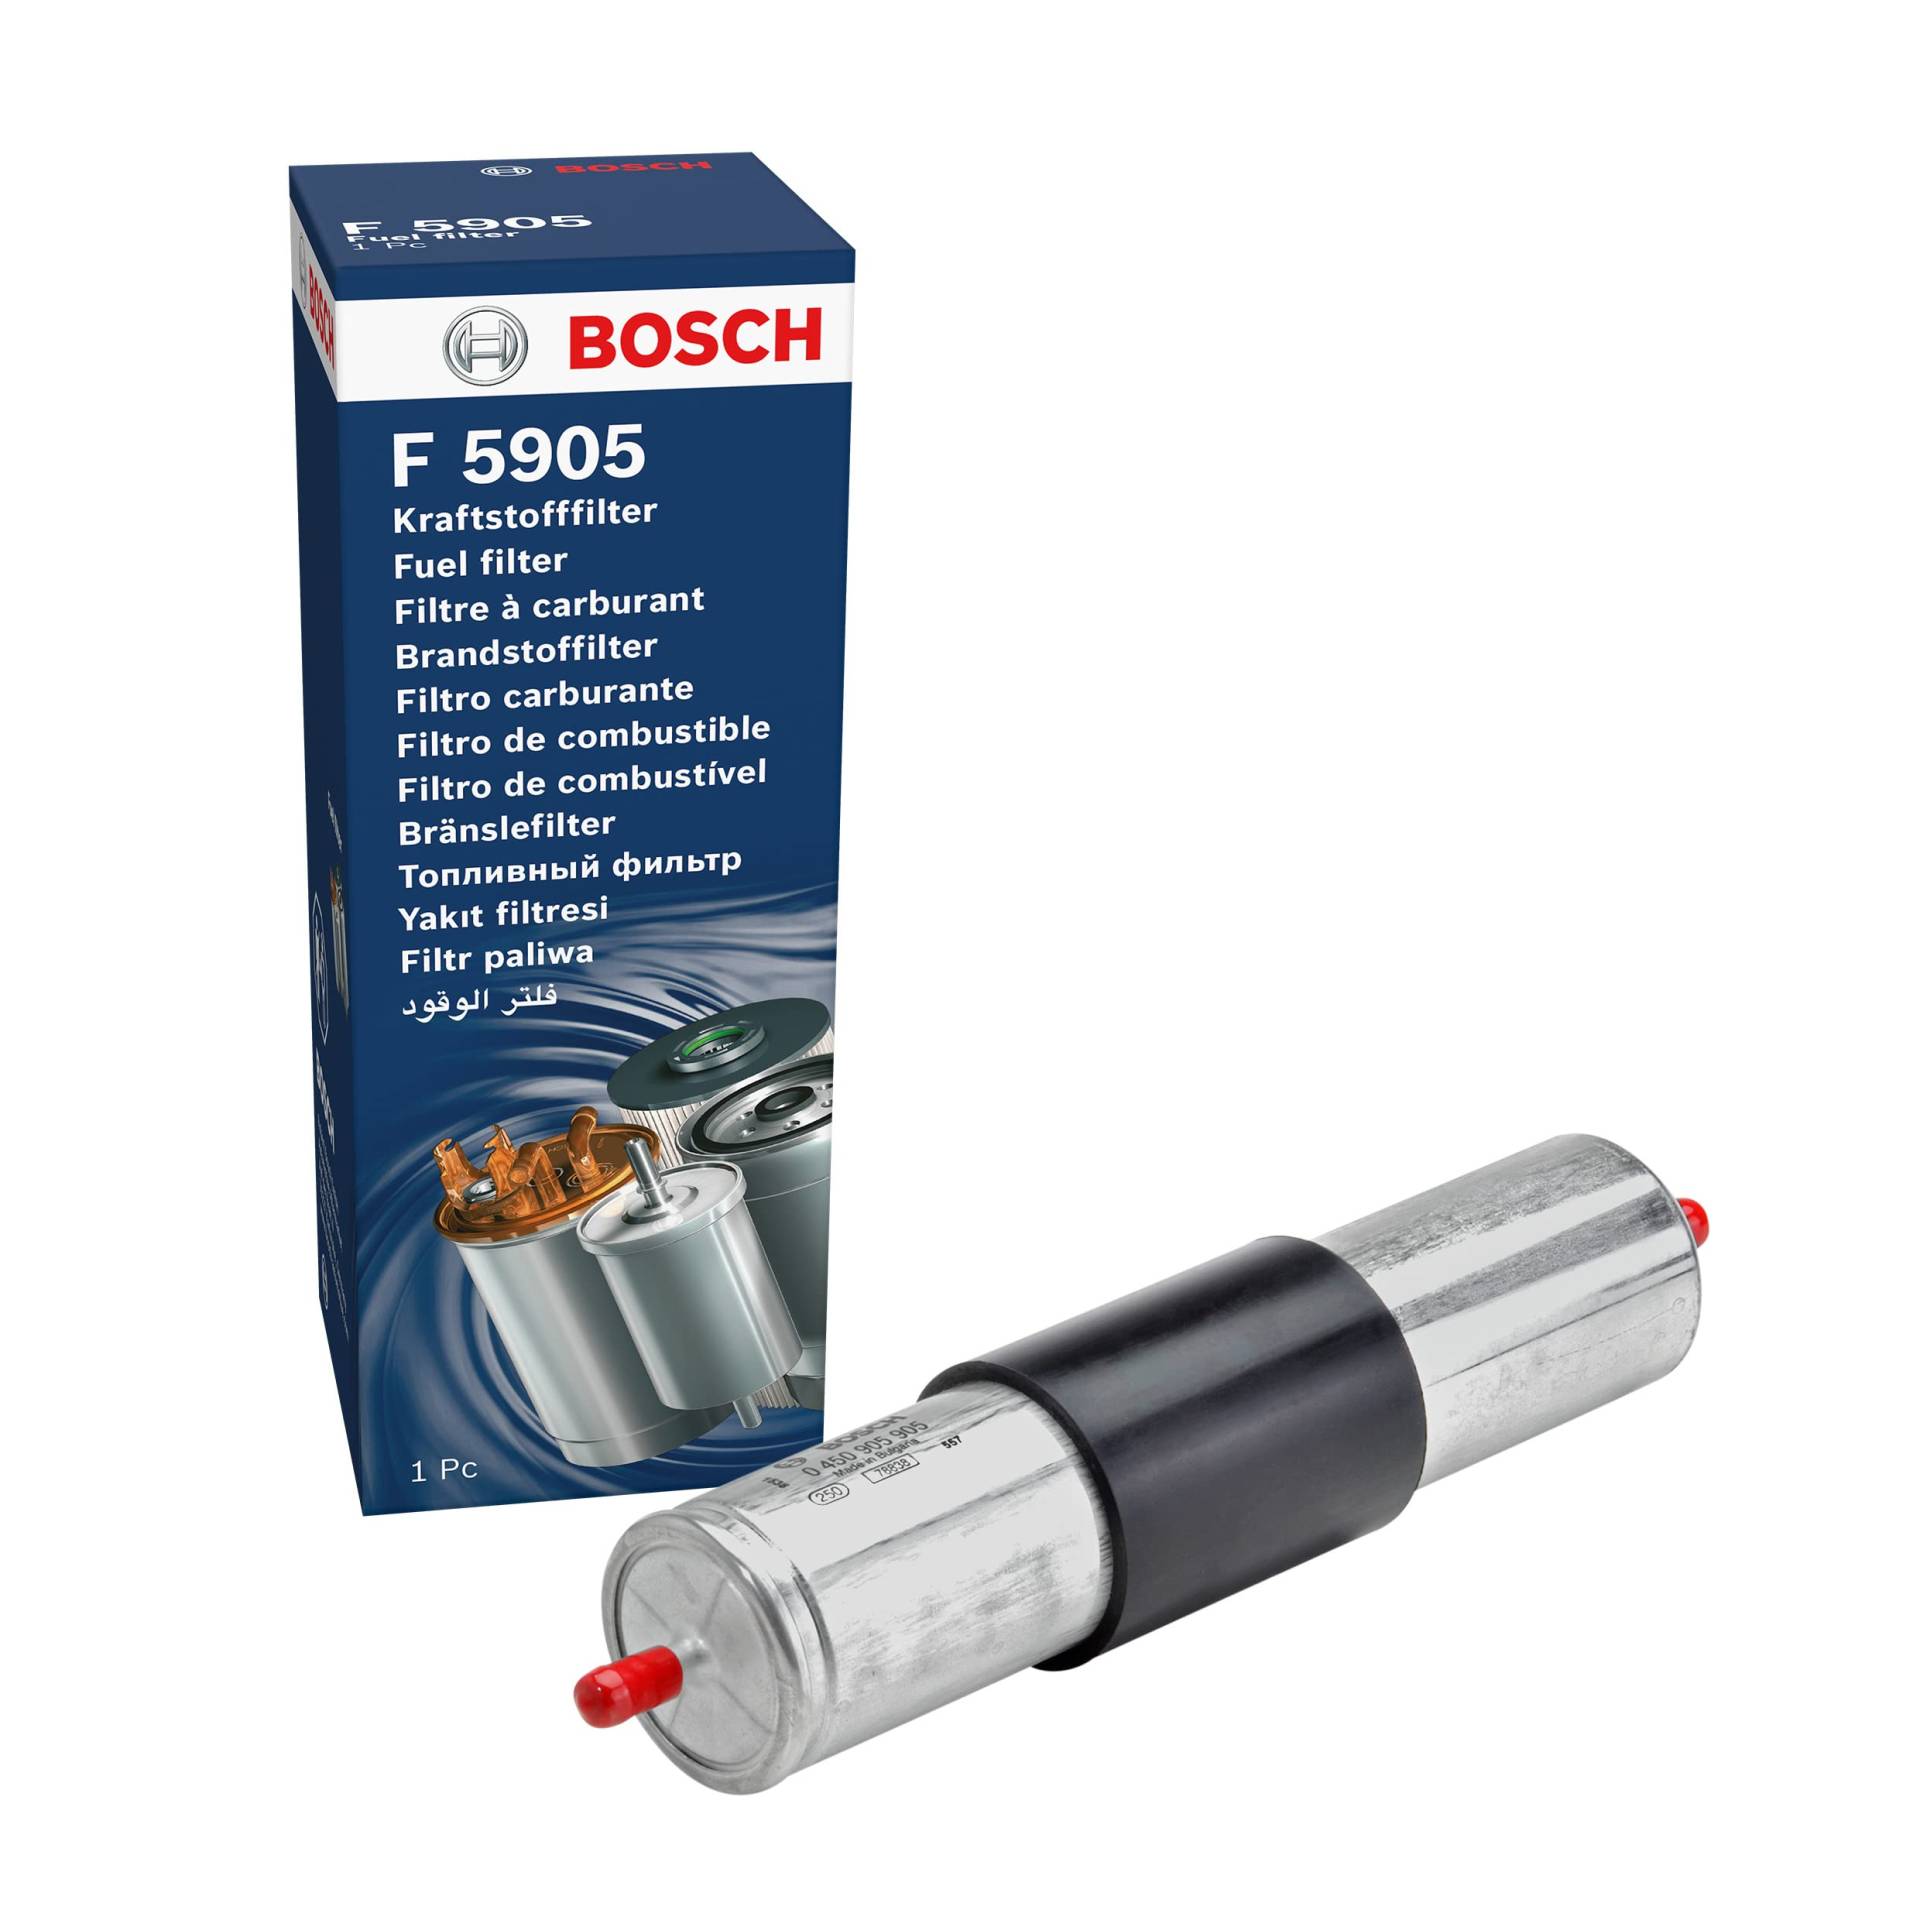 Bosch F5905 - Benzinfilter Auto von Bosch Automotive